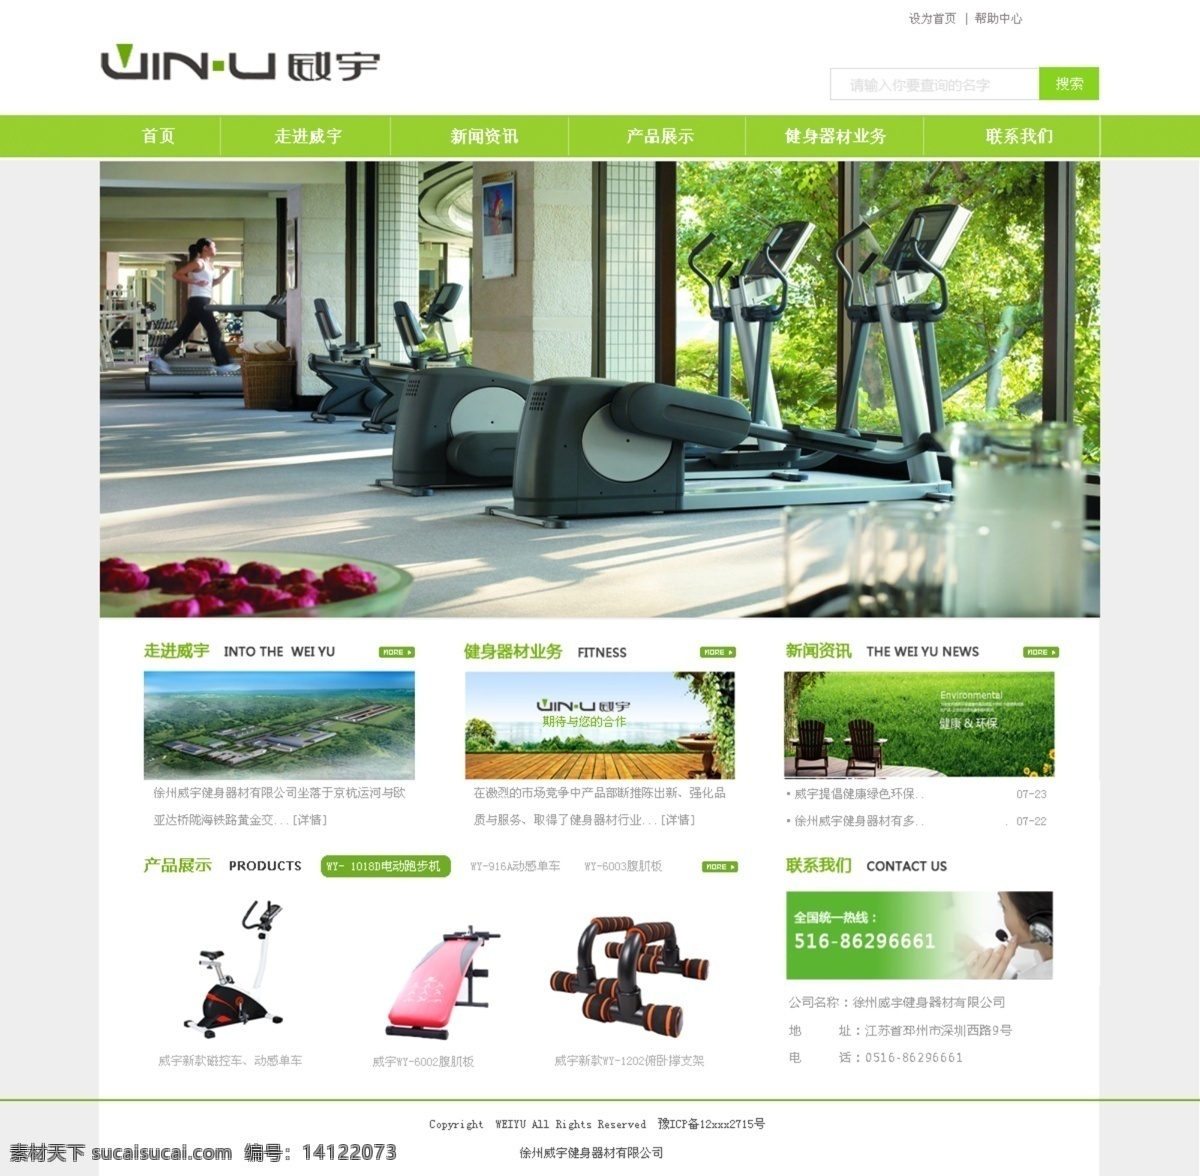 健身器材 网页 健身器材网页 网 网站 网页设计 原创设计 原创网页设计